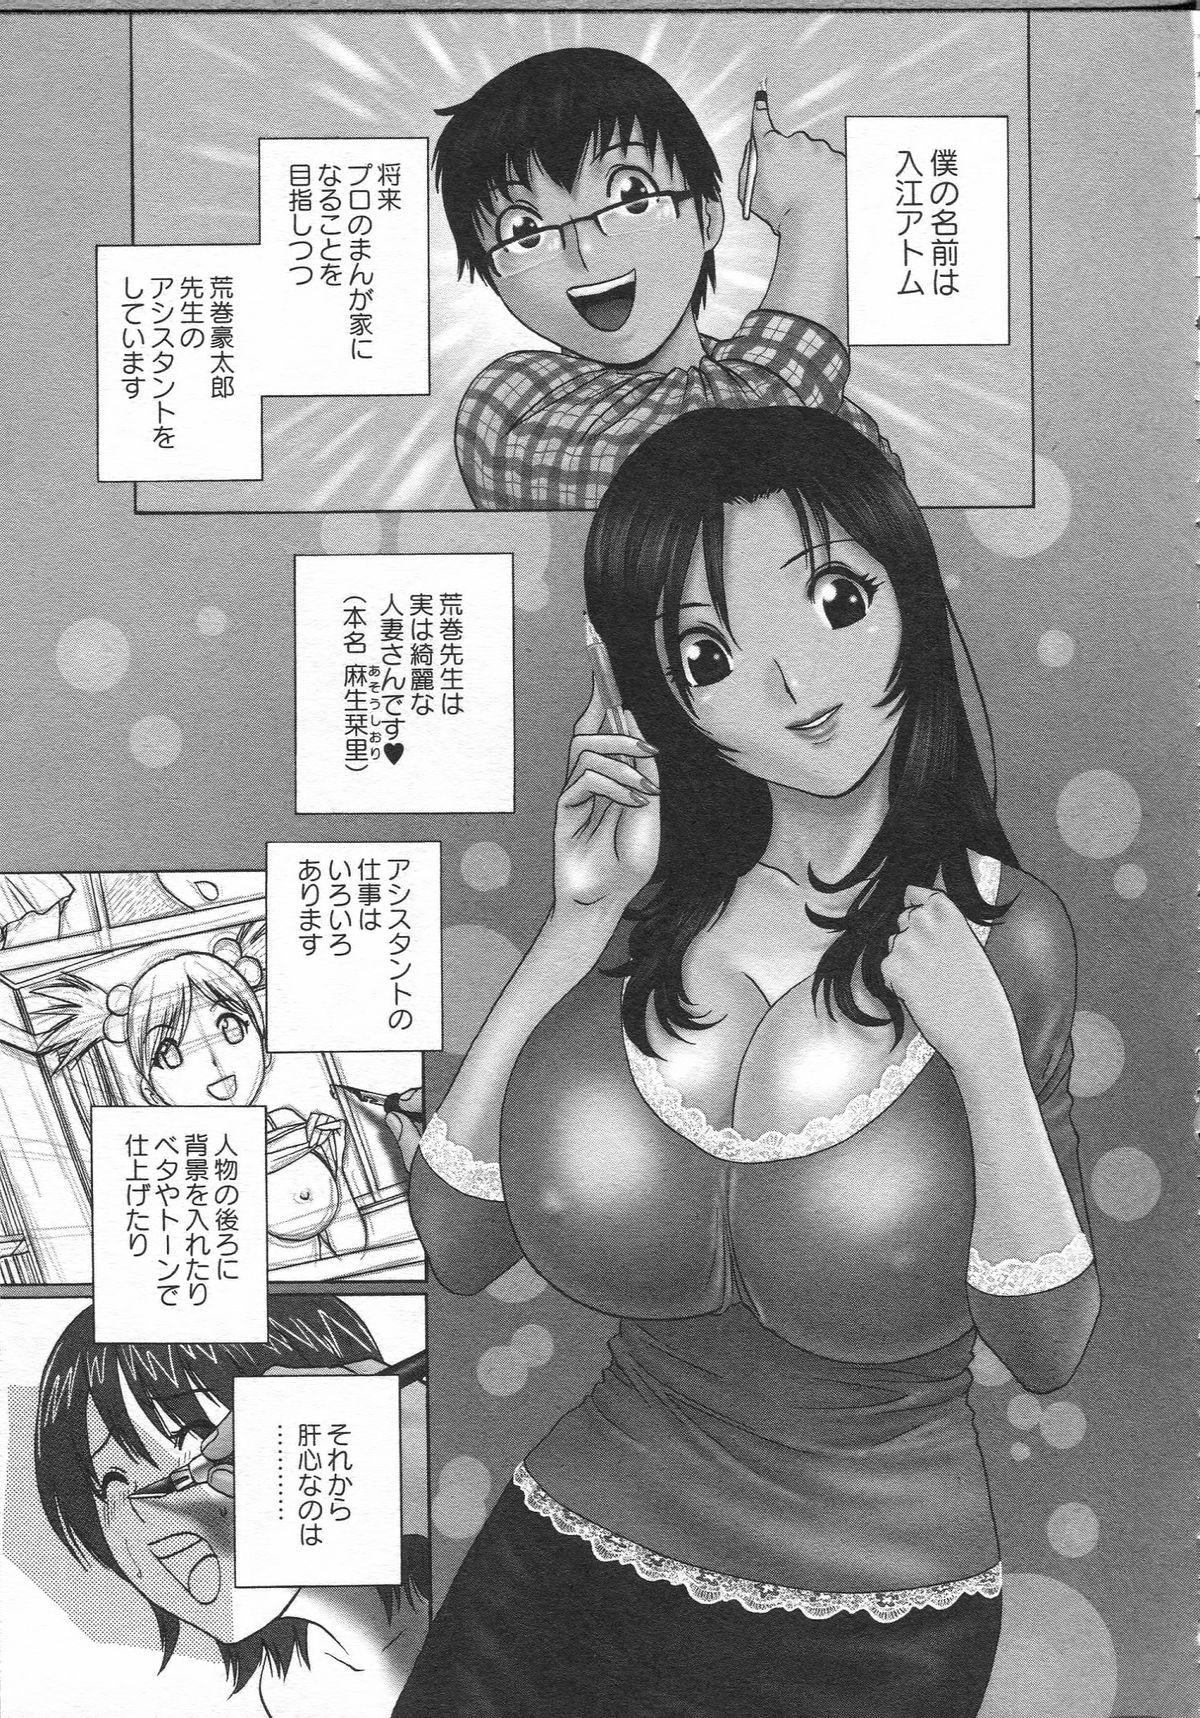 Manga no youna Hitozuma to no Hibi - Days with Married Women such as Comics. 60